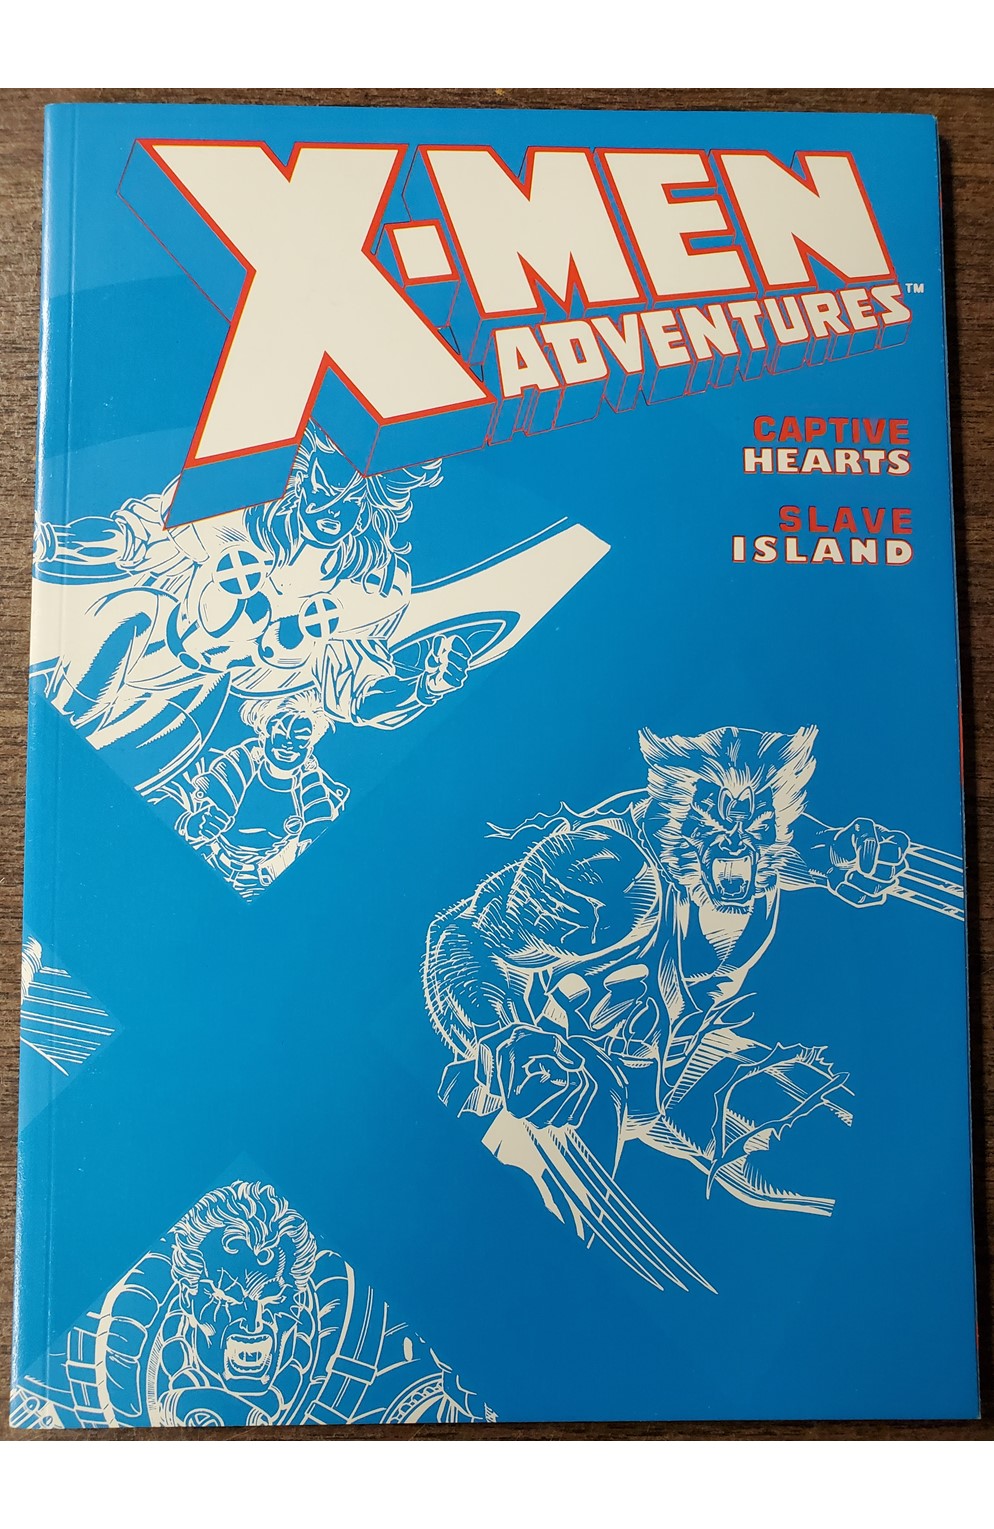 X-Men Adventures Volume 2 Graphic Novel (Marvel 1993) Used - Like New